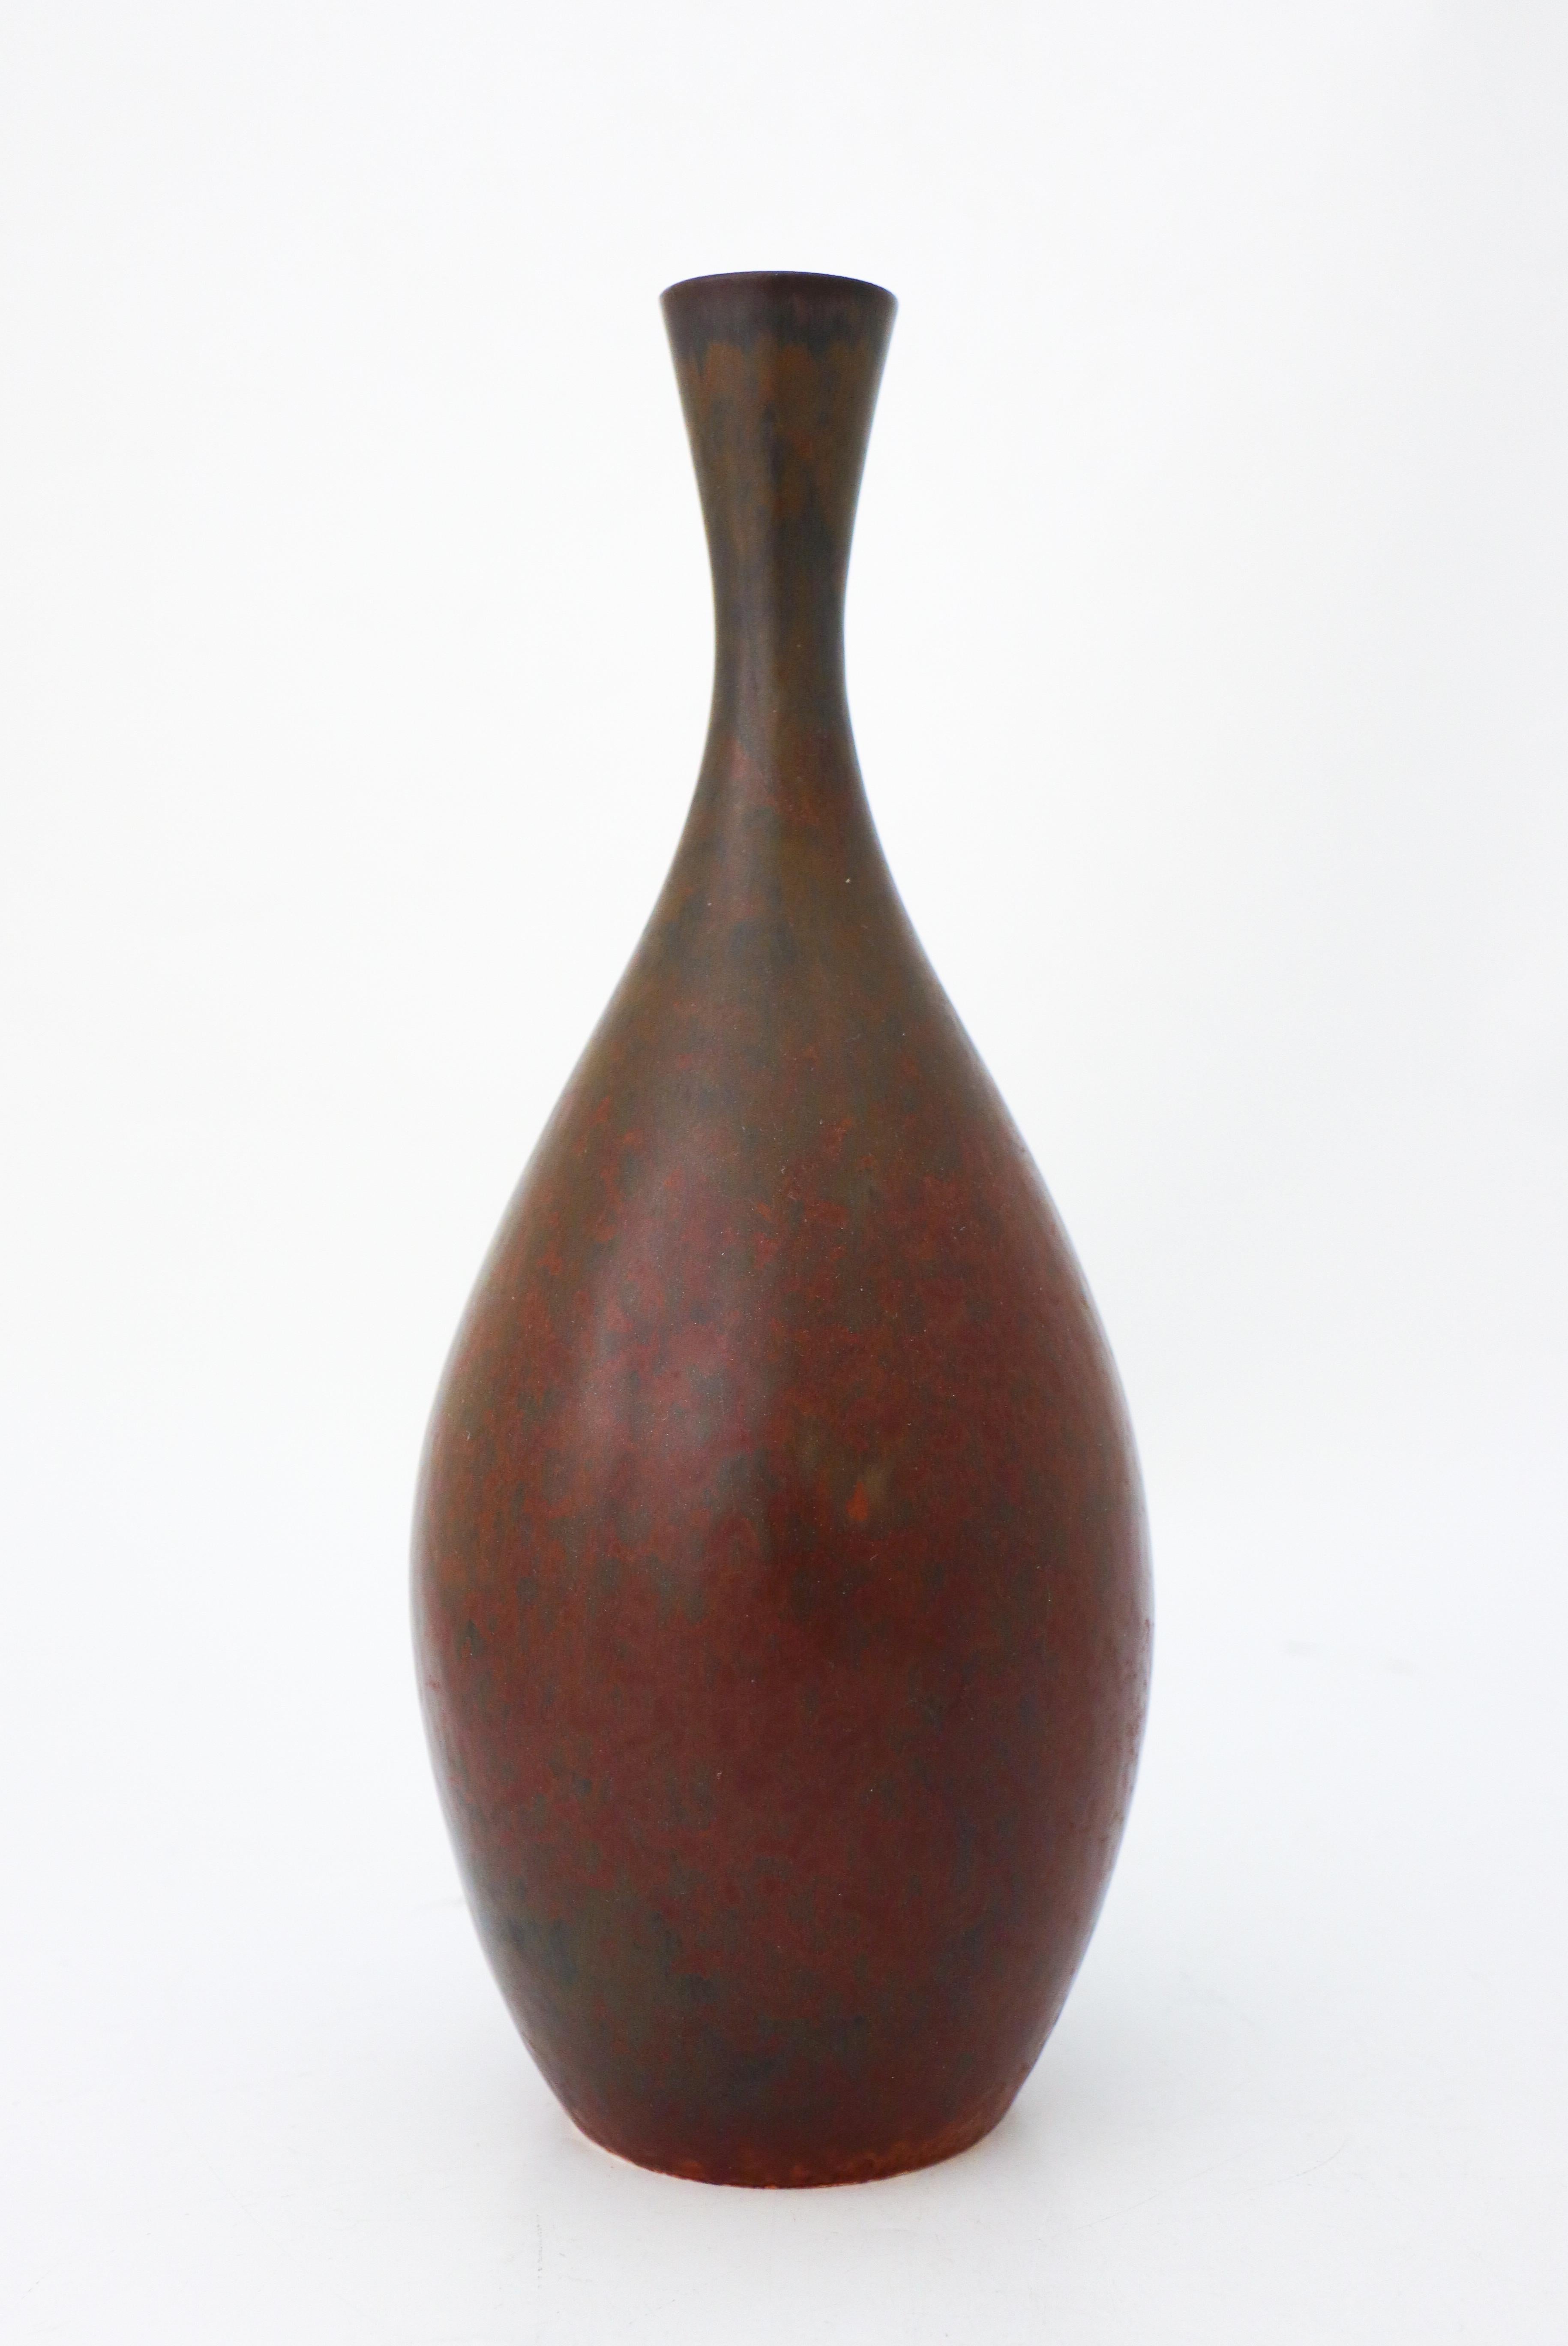 Eine Vase mit einer schönen braunen Glasur, entworfen von Carl-Harry Stålhane bei Rörstrand. Die Vase ist 28,5 cm (11.4